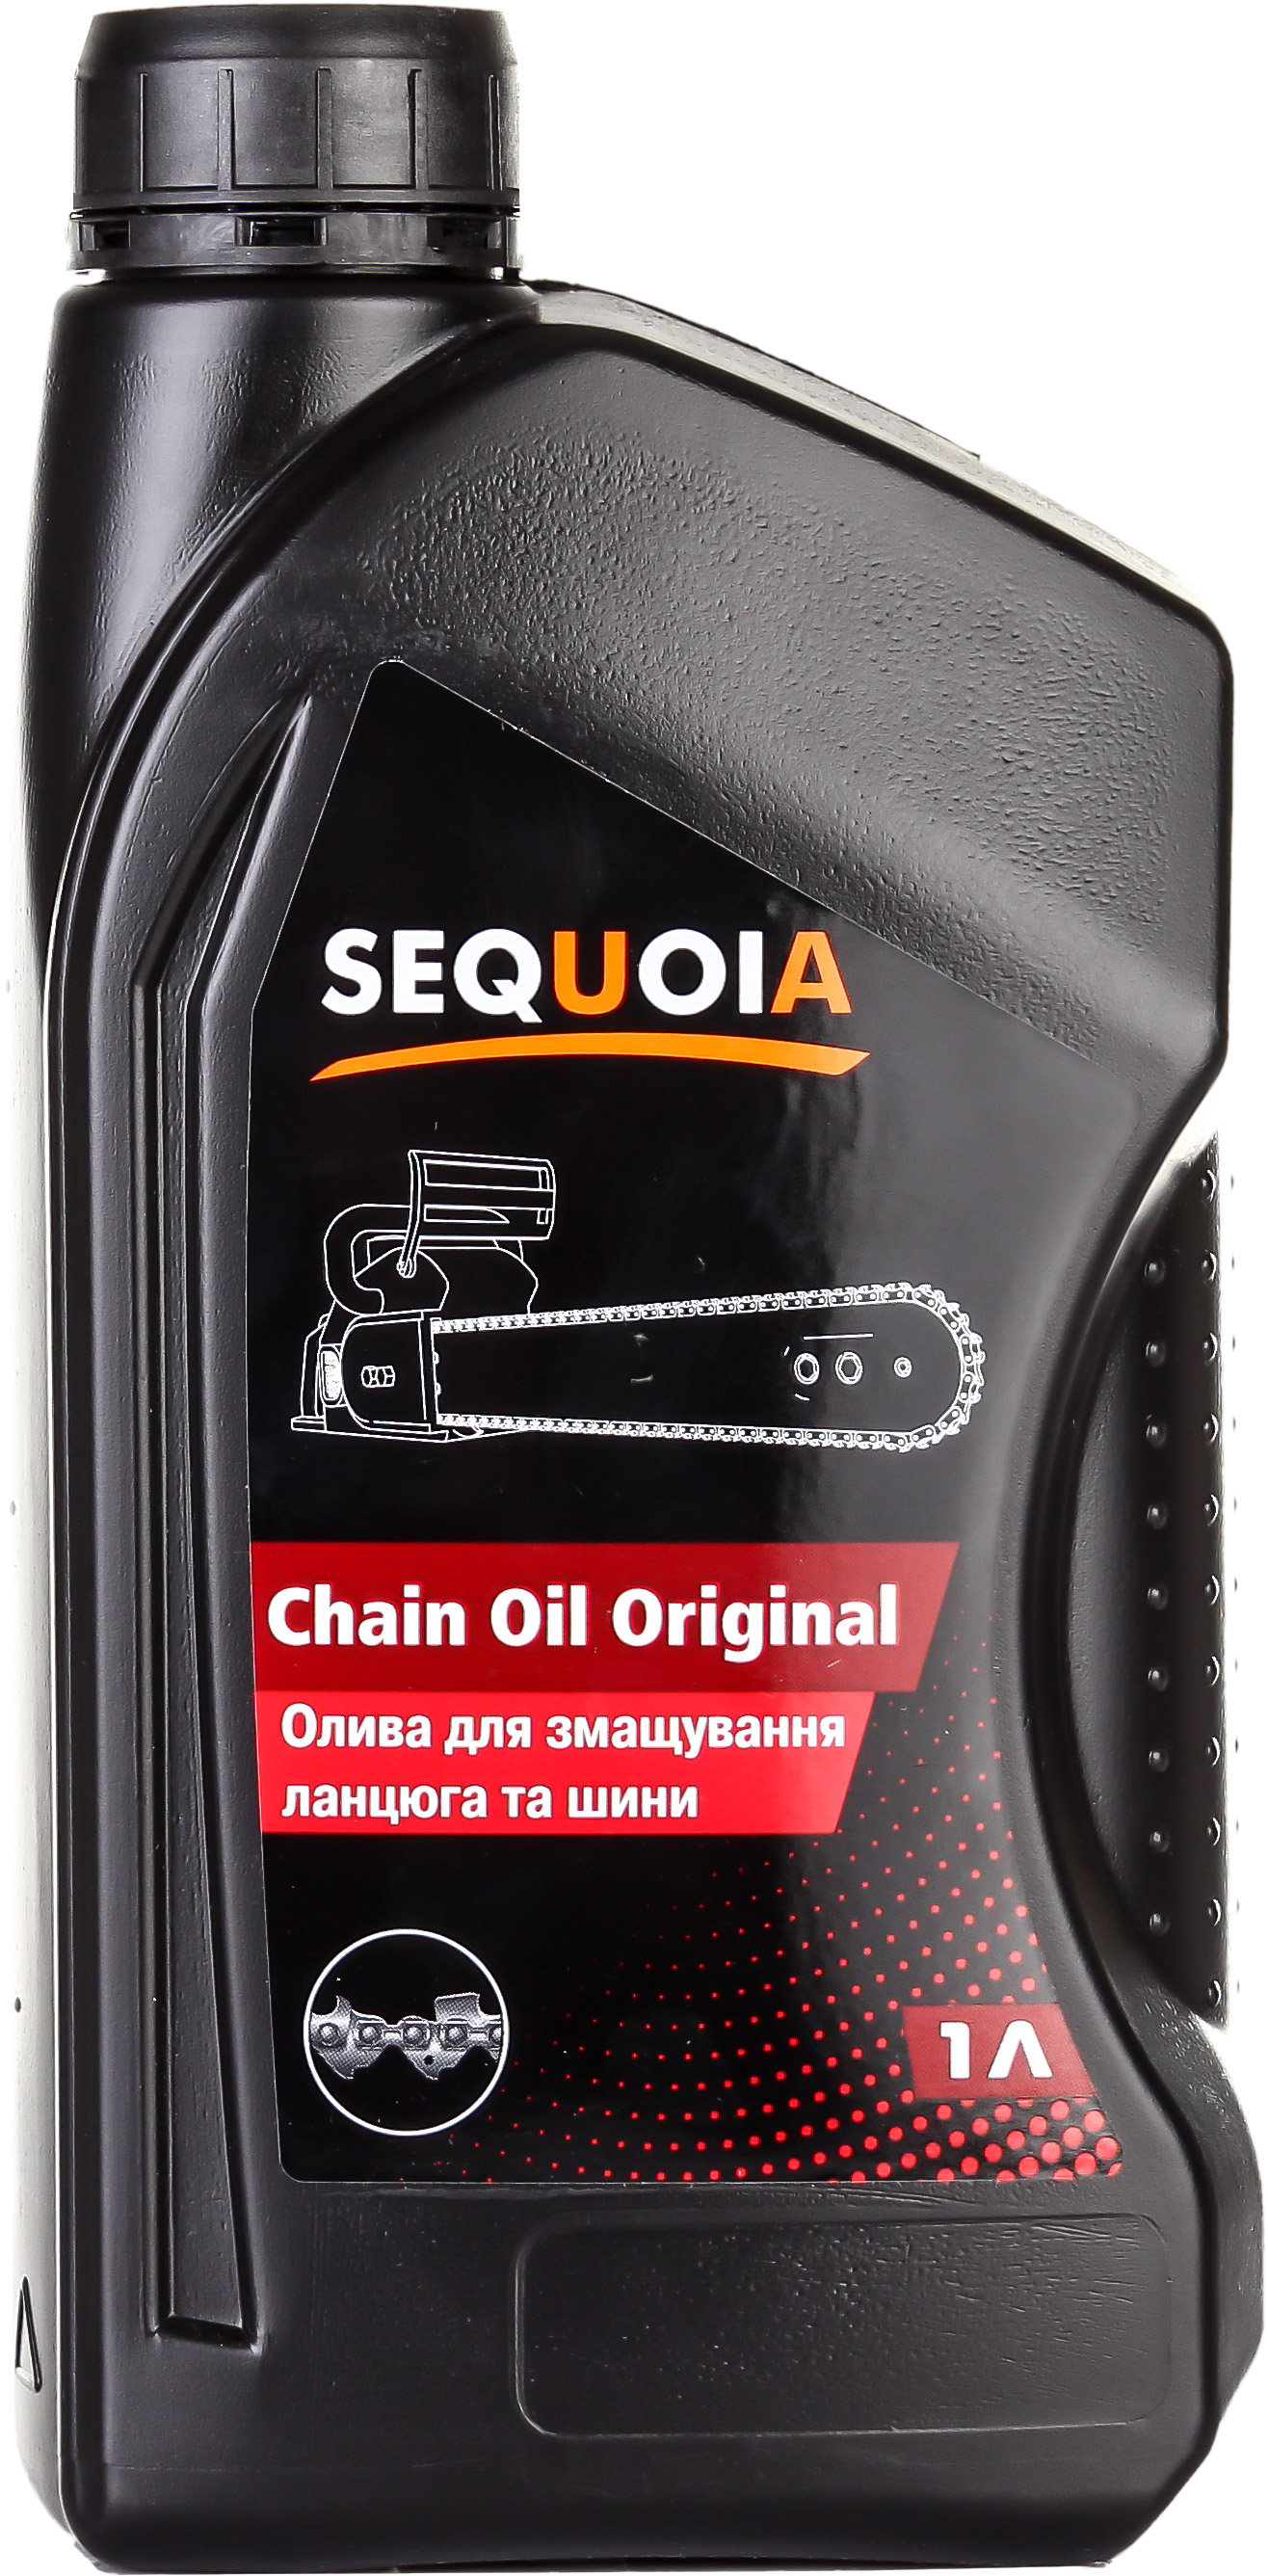 Масло для смазывания цепи и шины Sequoia ChainOil-Original – фото .